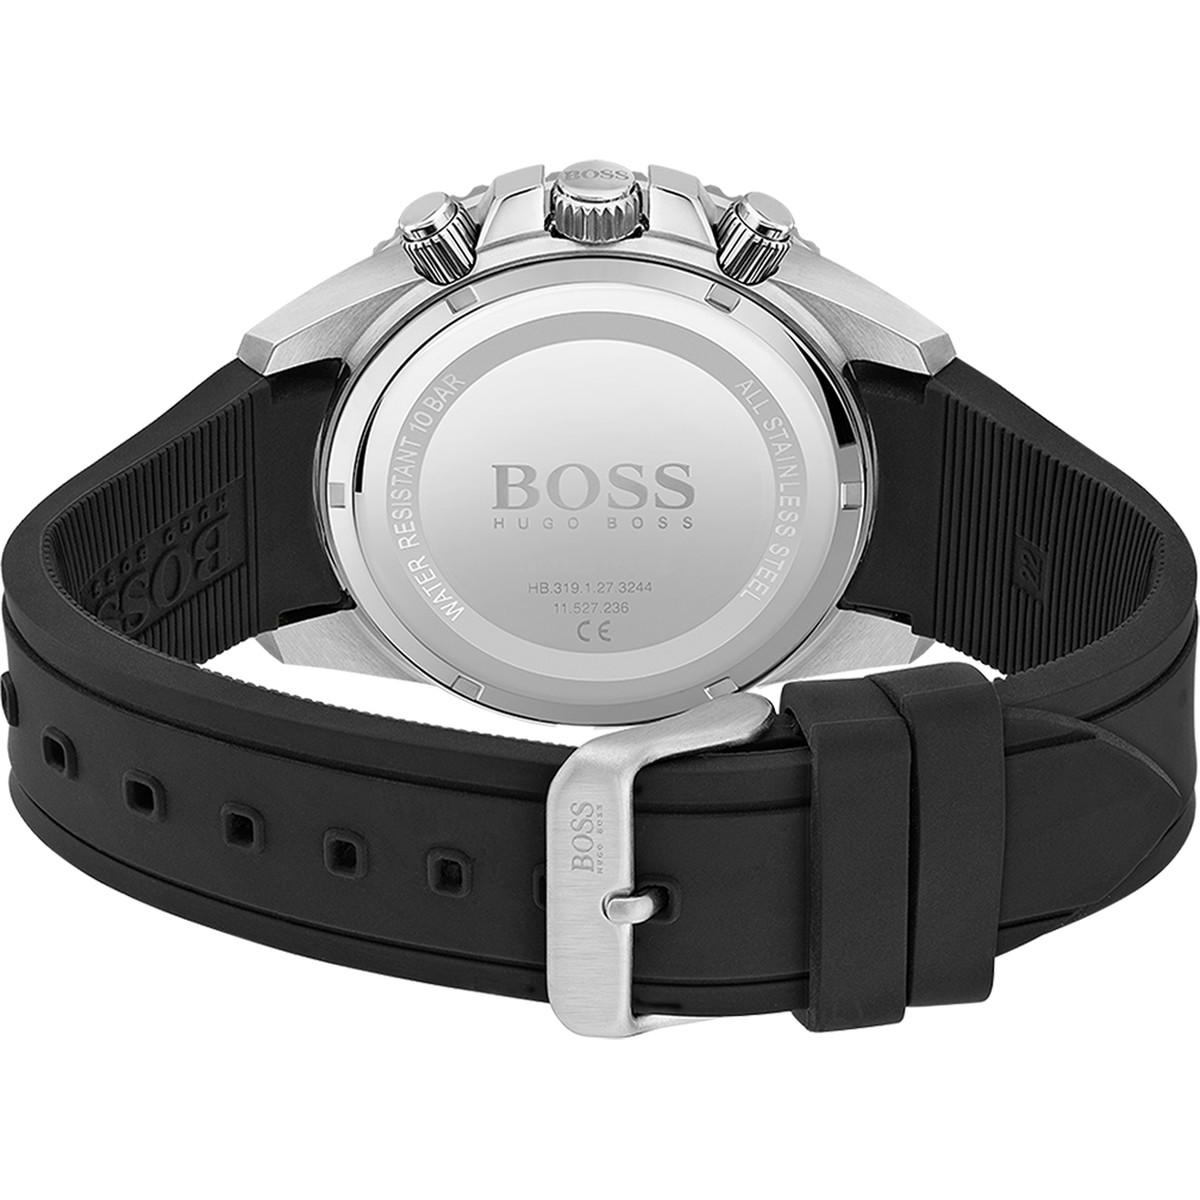 Montre Boss homme acier bracelet silicone noir - vue 3